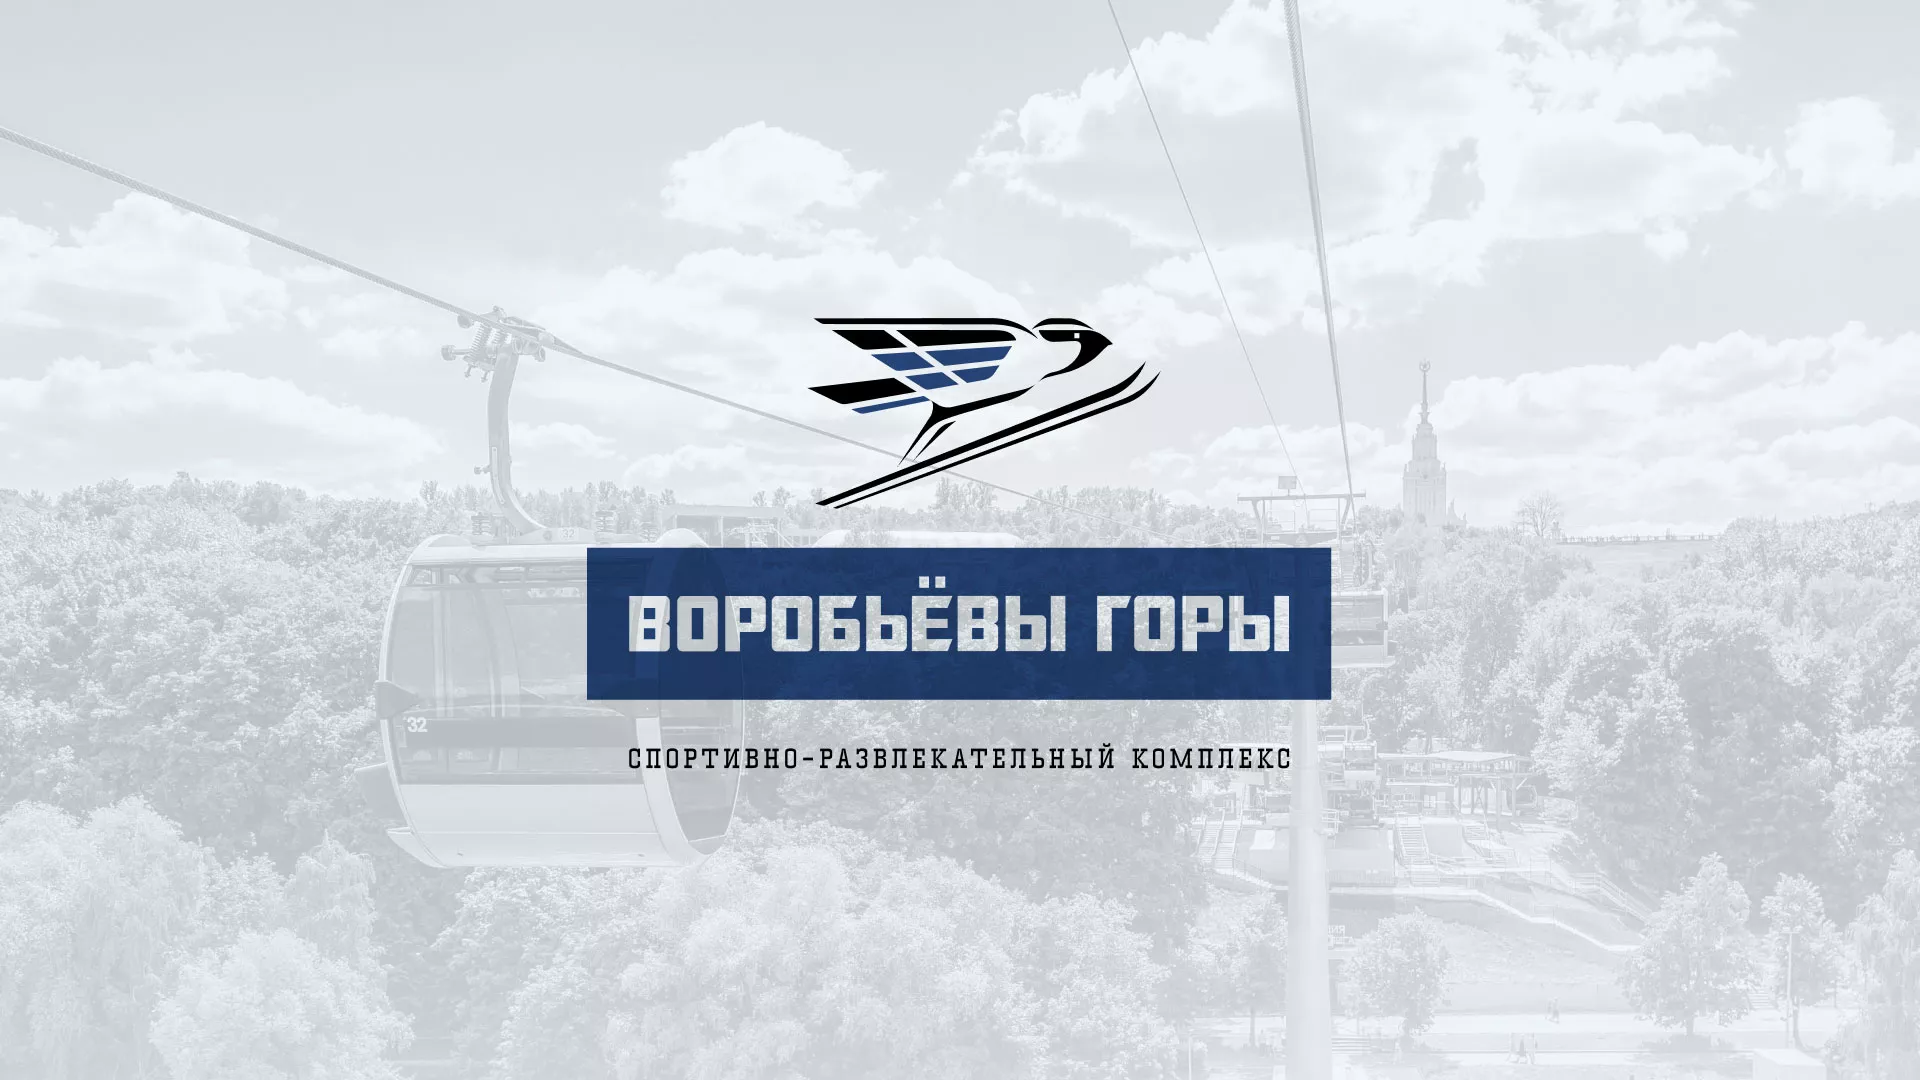 Разработка сайта в Верхоянске для спортивно-развлекательного комплекса «Воробьёвы горы»